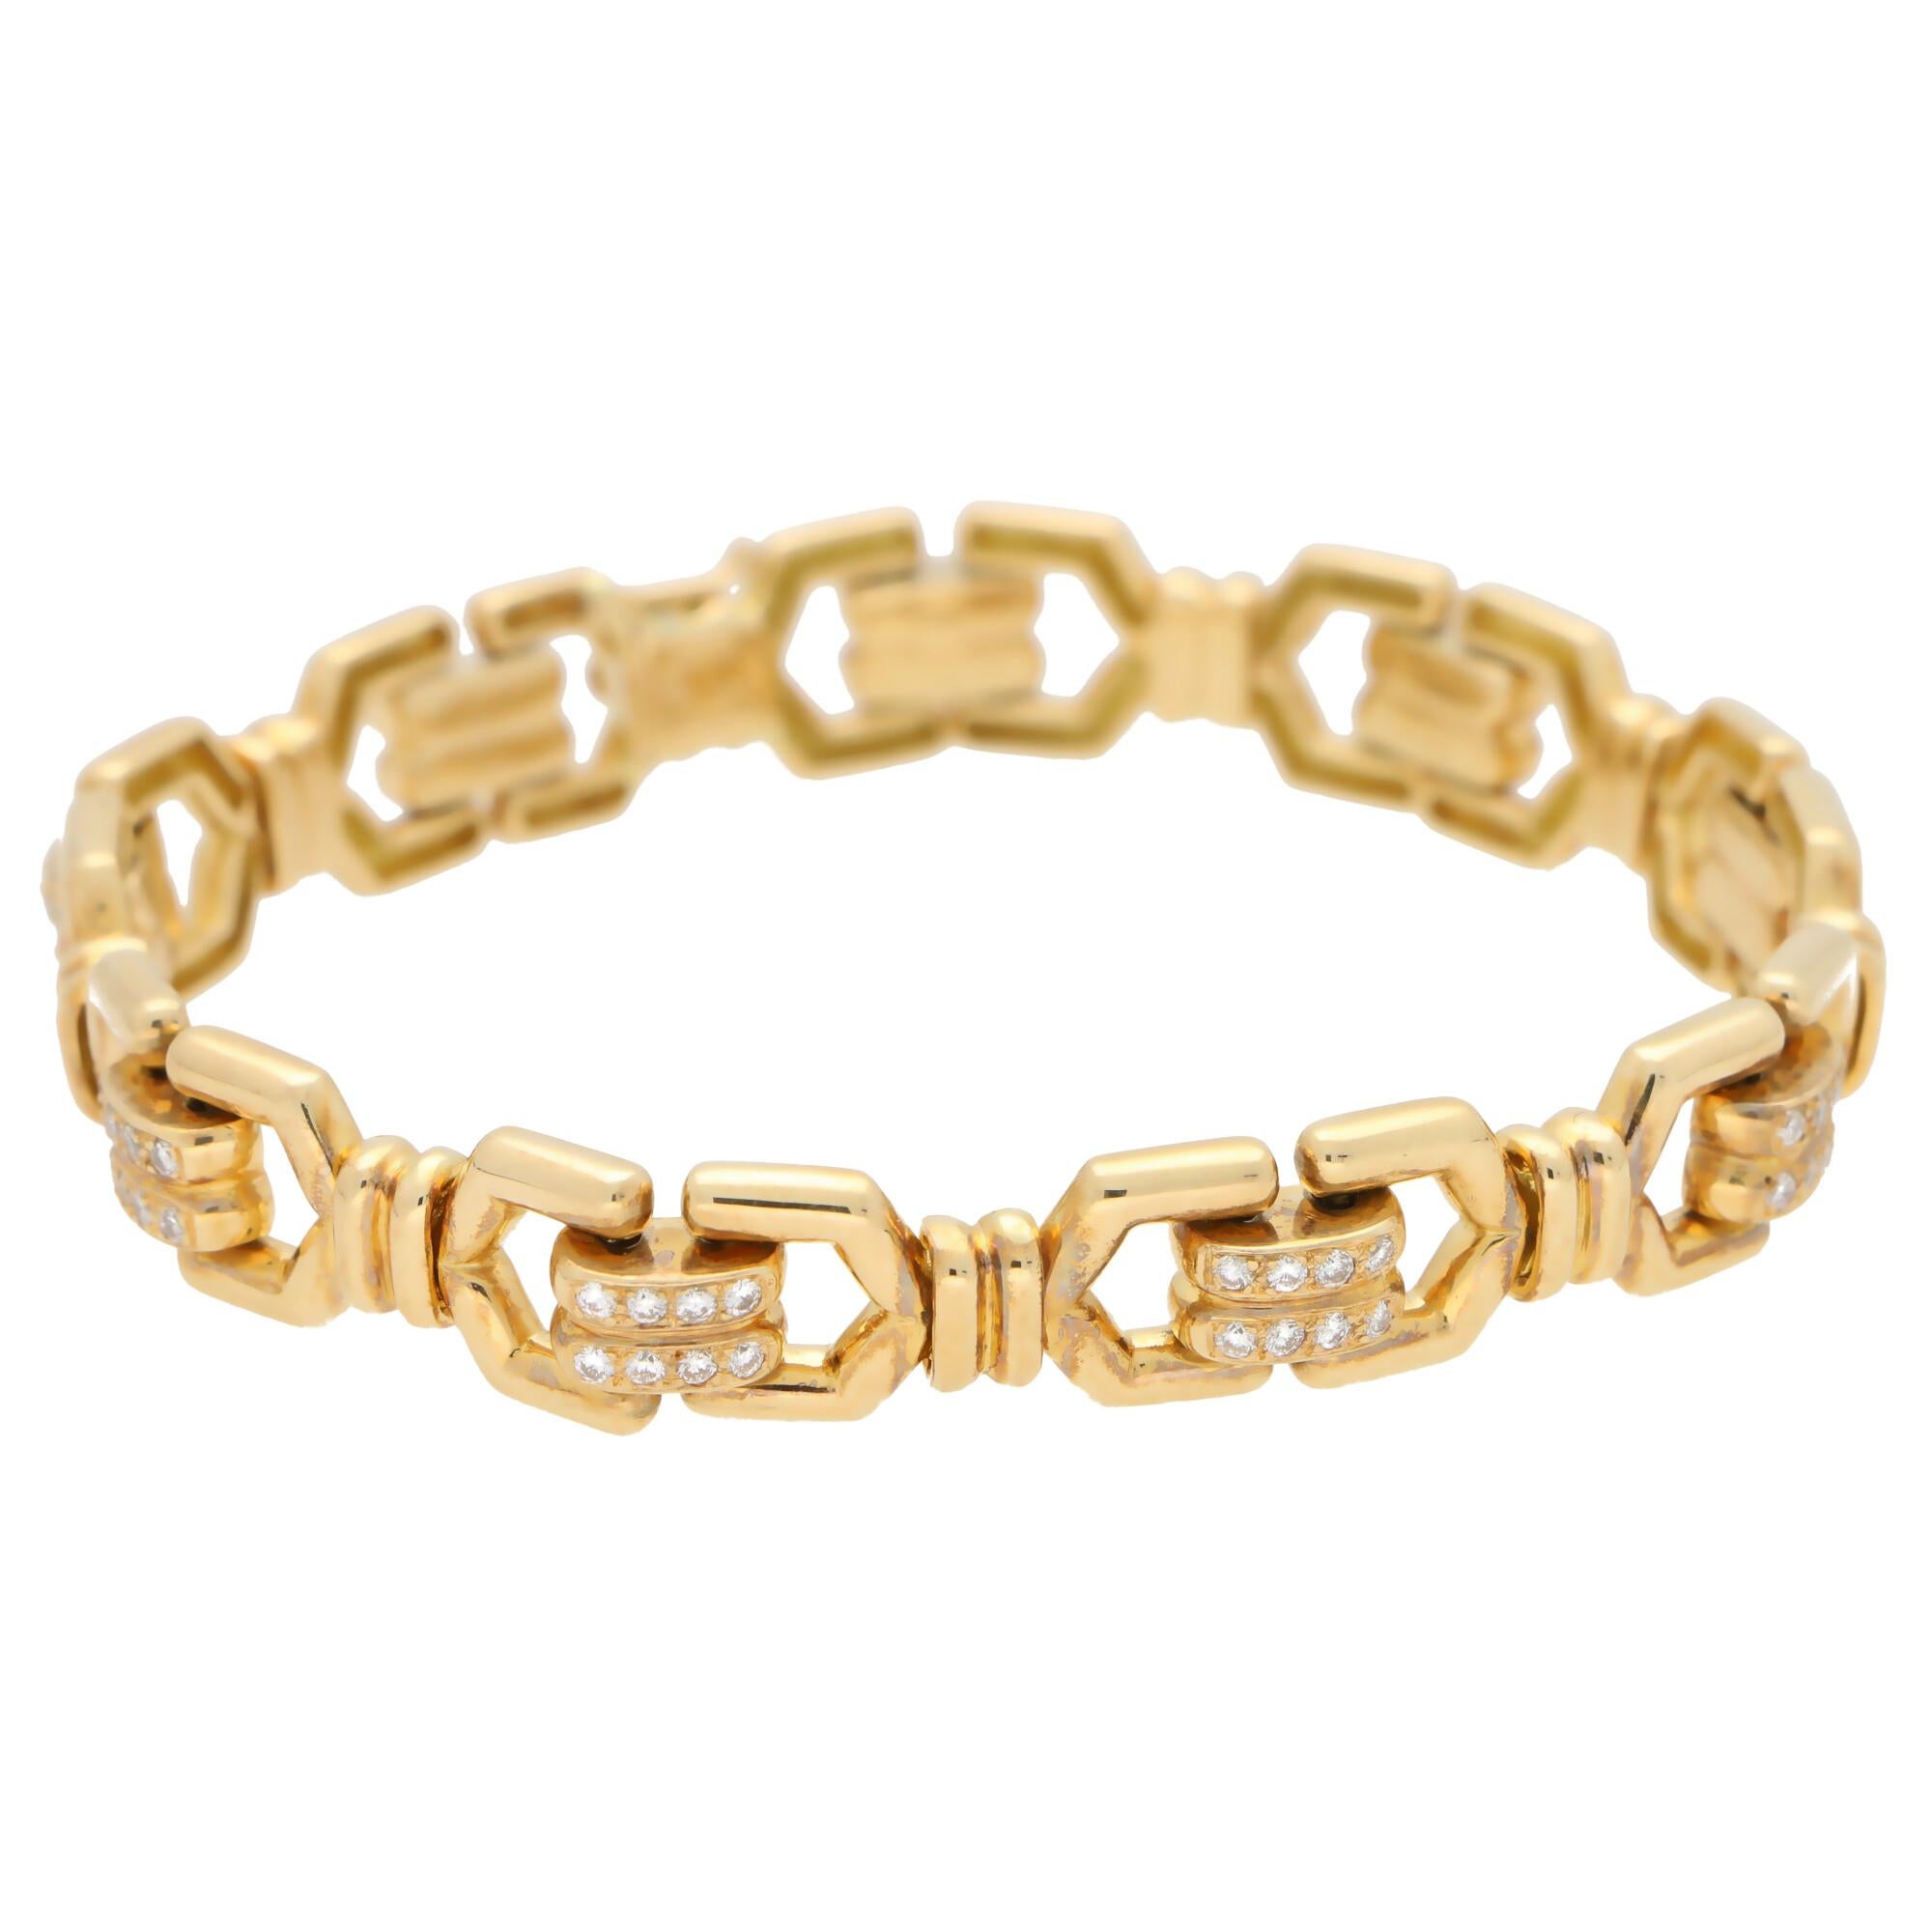 Ravissant bracelet à maillons en diamants signé Mauboussin, en or jaune 18 carats.

Le bracelet est composé de neuf maillons articulés magnifiquement travaillés, tous étant sertis au centre d'un panneau de diamants pavés. 

Les maillons étant